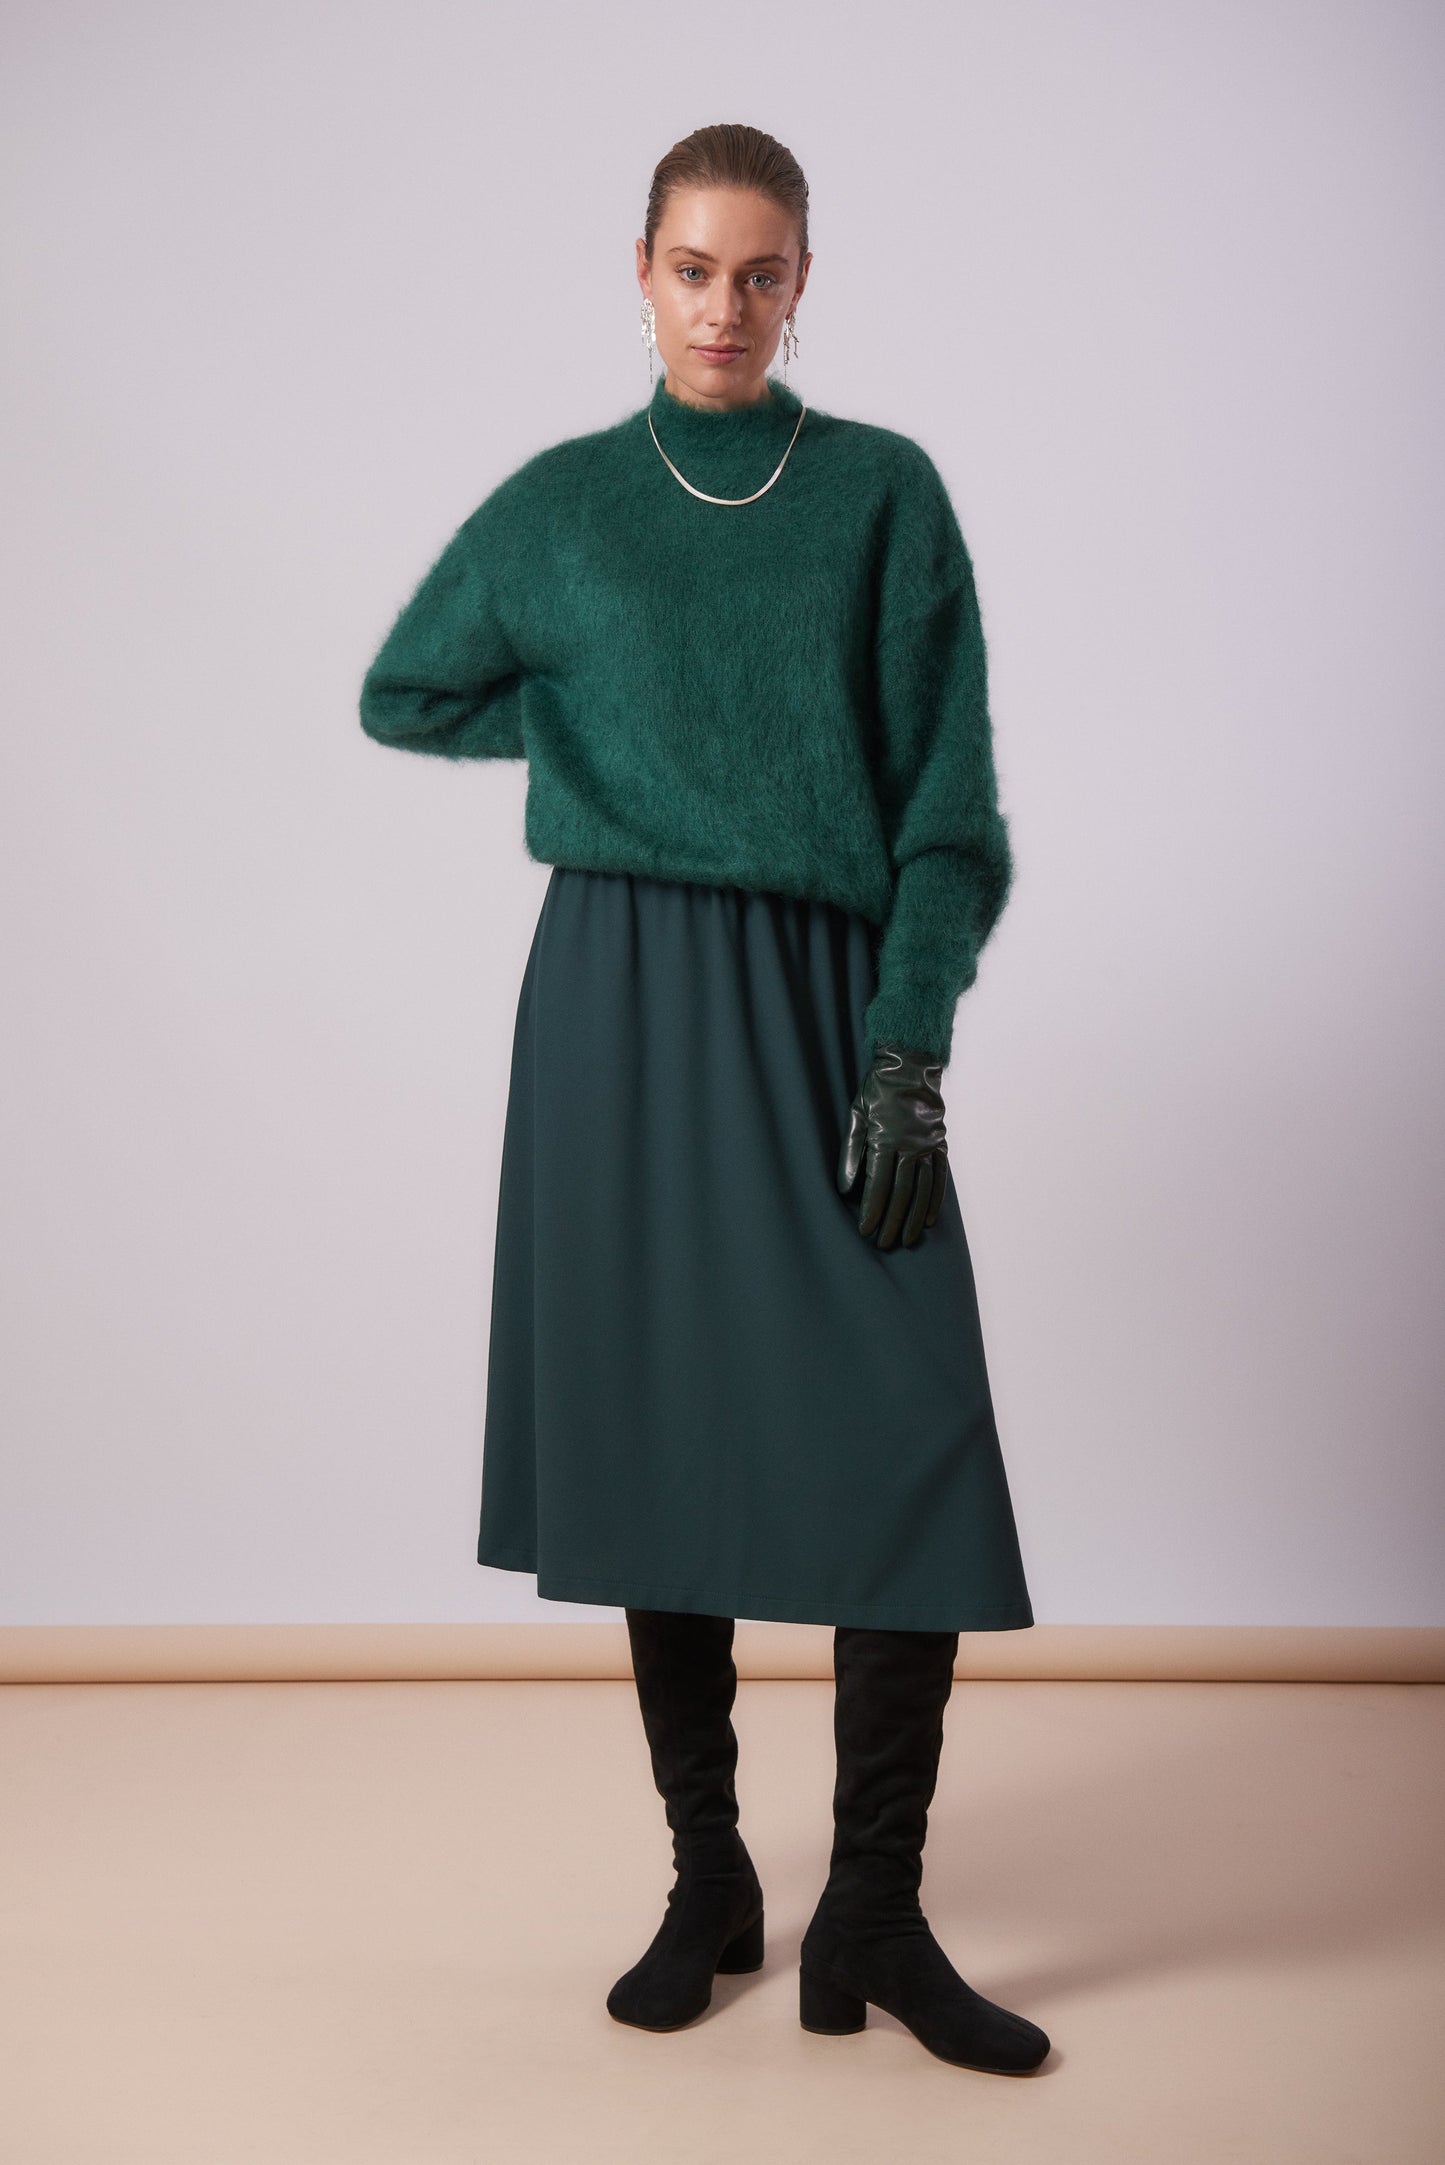 Skirt 1 Medium Length Skirt | Green